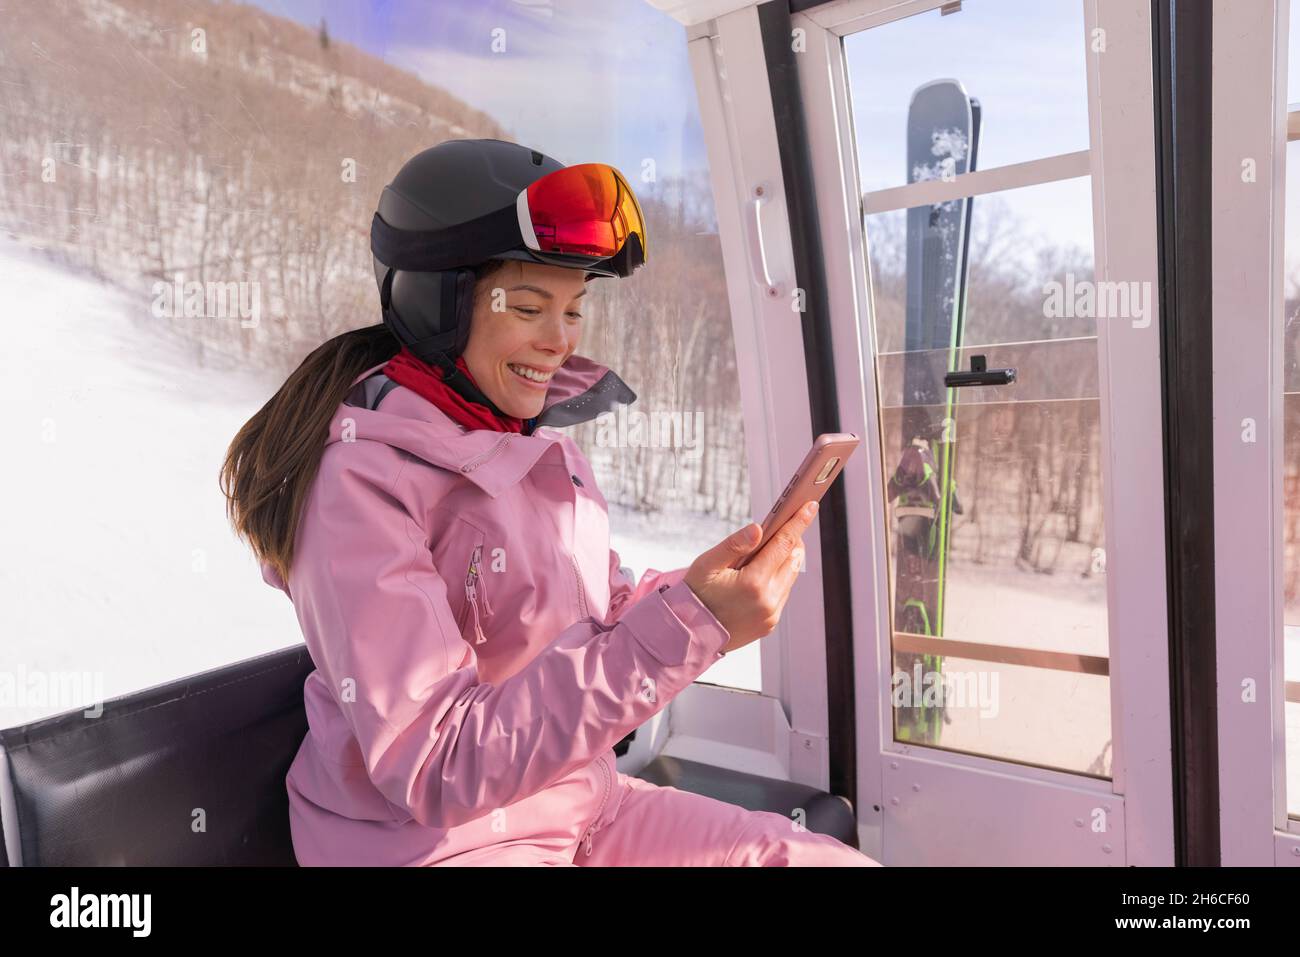 Vacaciones de esquí - Mujer esquiadora usando la aplicación de teléfono en el telesilla. Chica sonriente mirando al smartphone móvil con ropa de esquí, casco y gafas Foto de stock